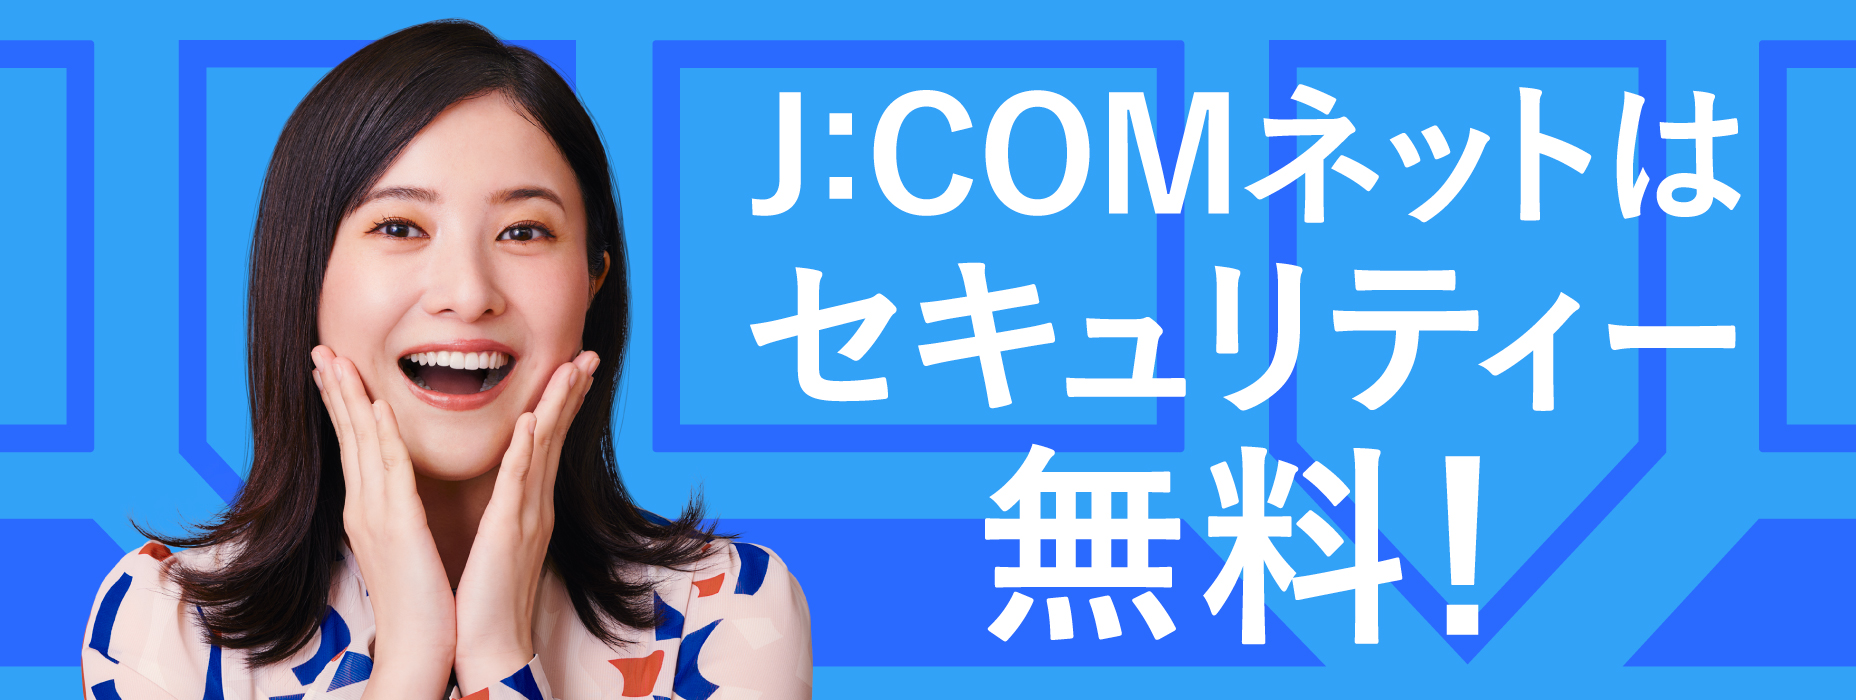 J:COM NET offers free security